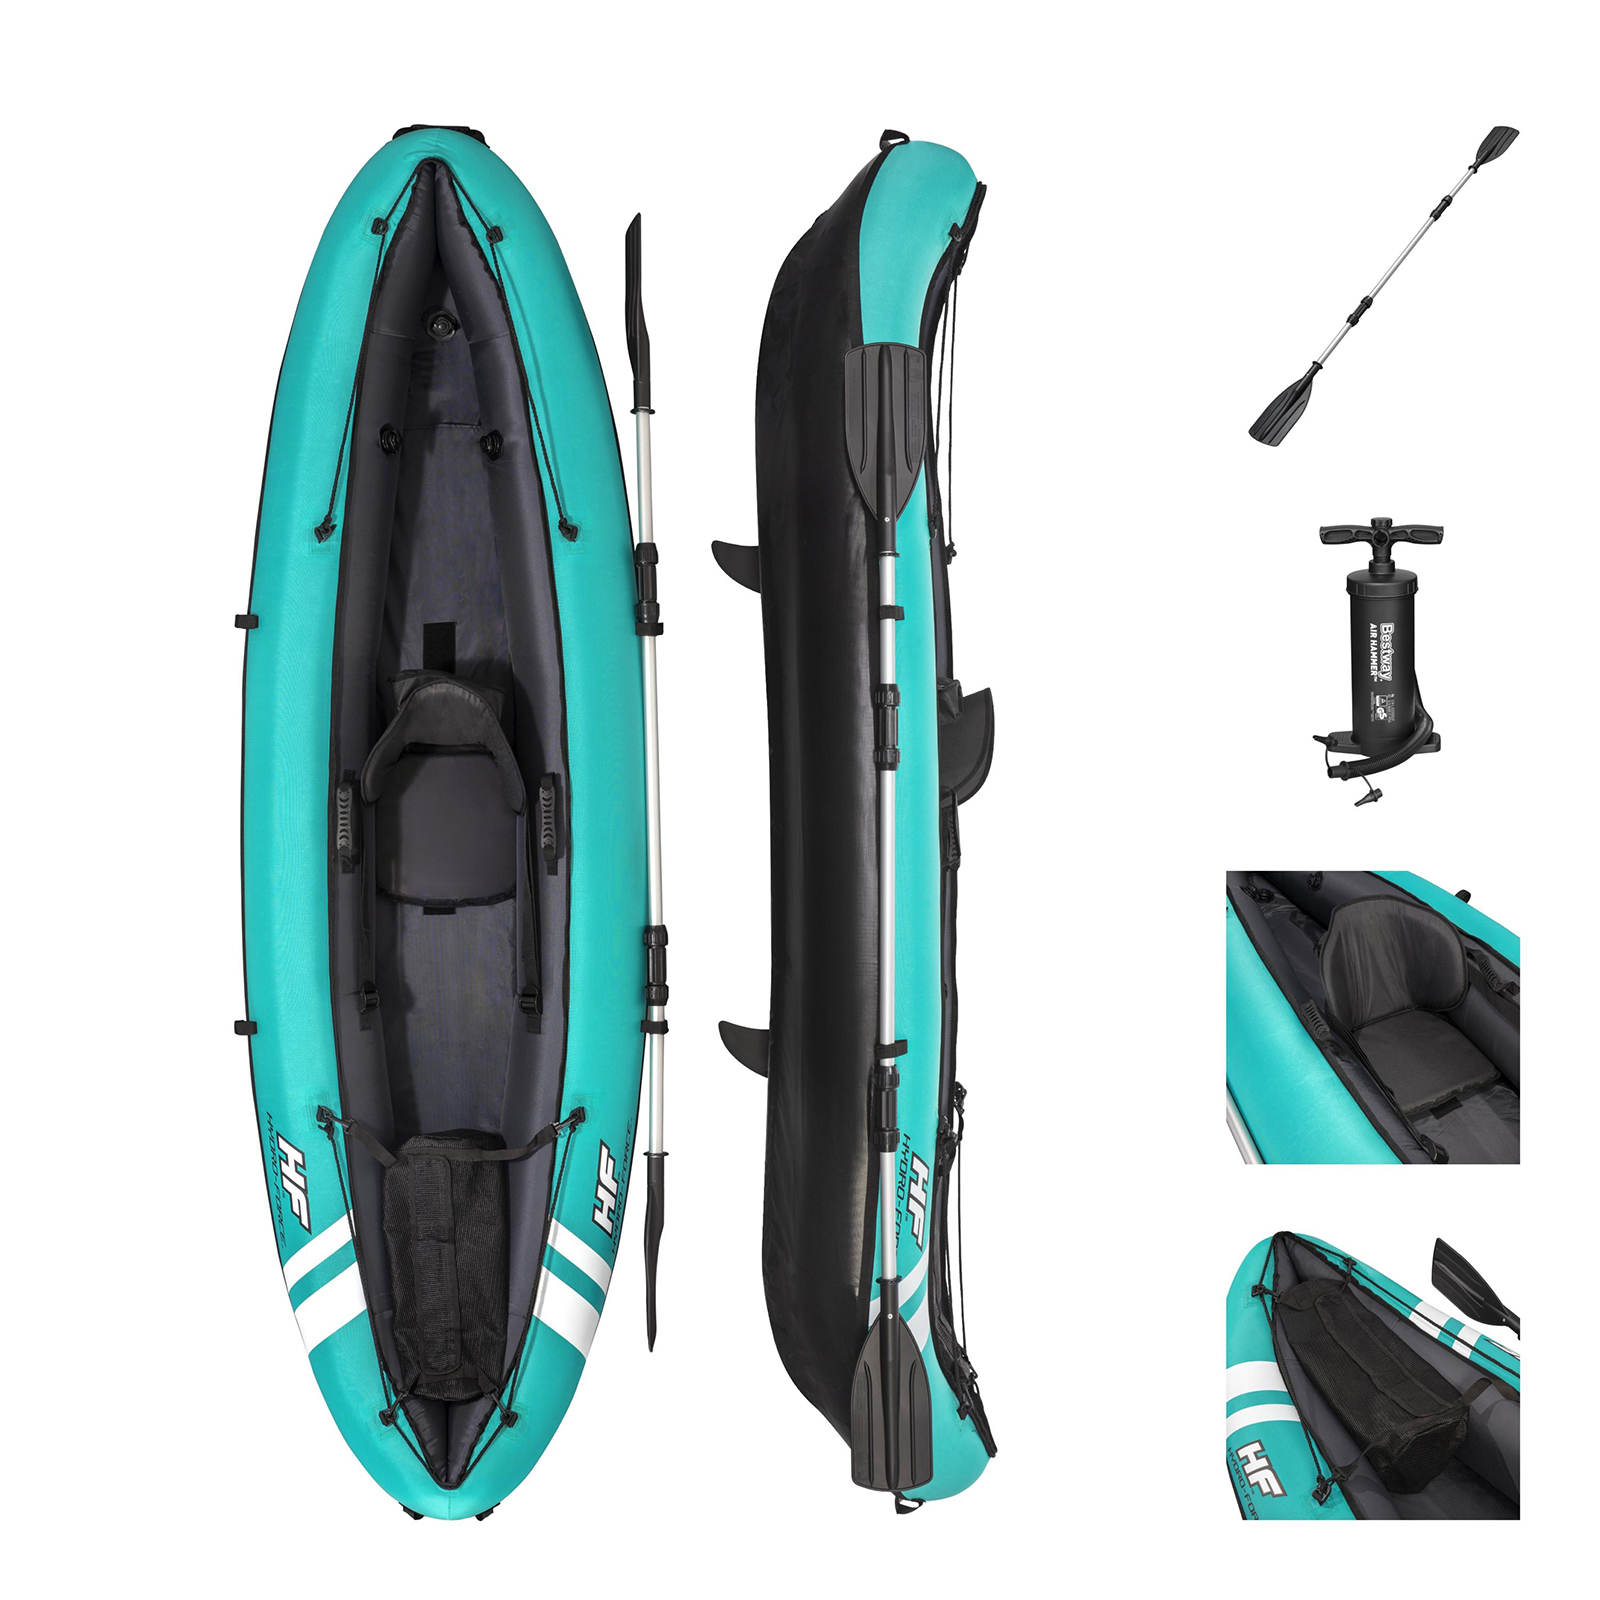 Kayak Hinchable Bestway Hydro-force Ventura 280x86 Cm 1 Persona Con Inflador Y Remo - azul - 